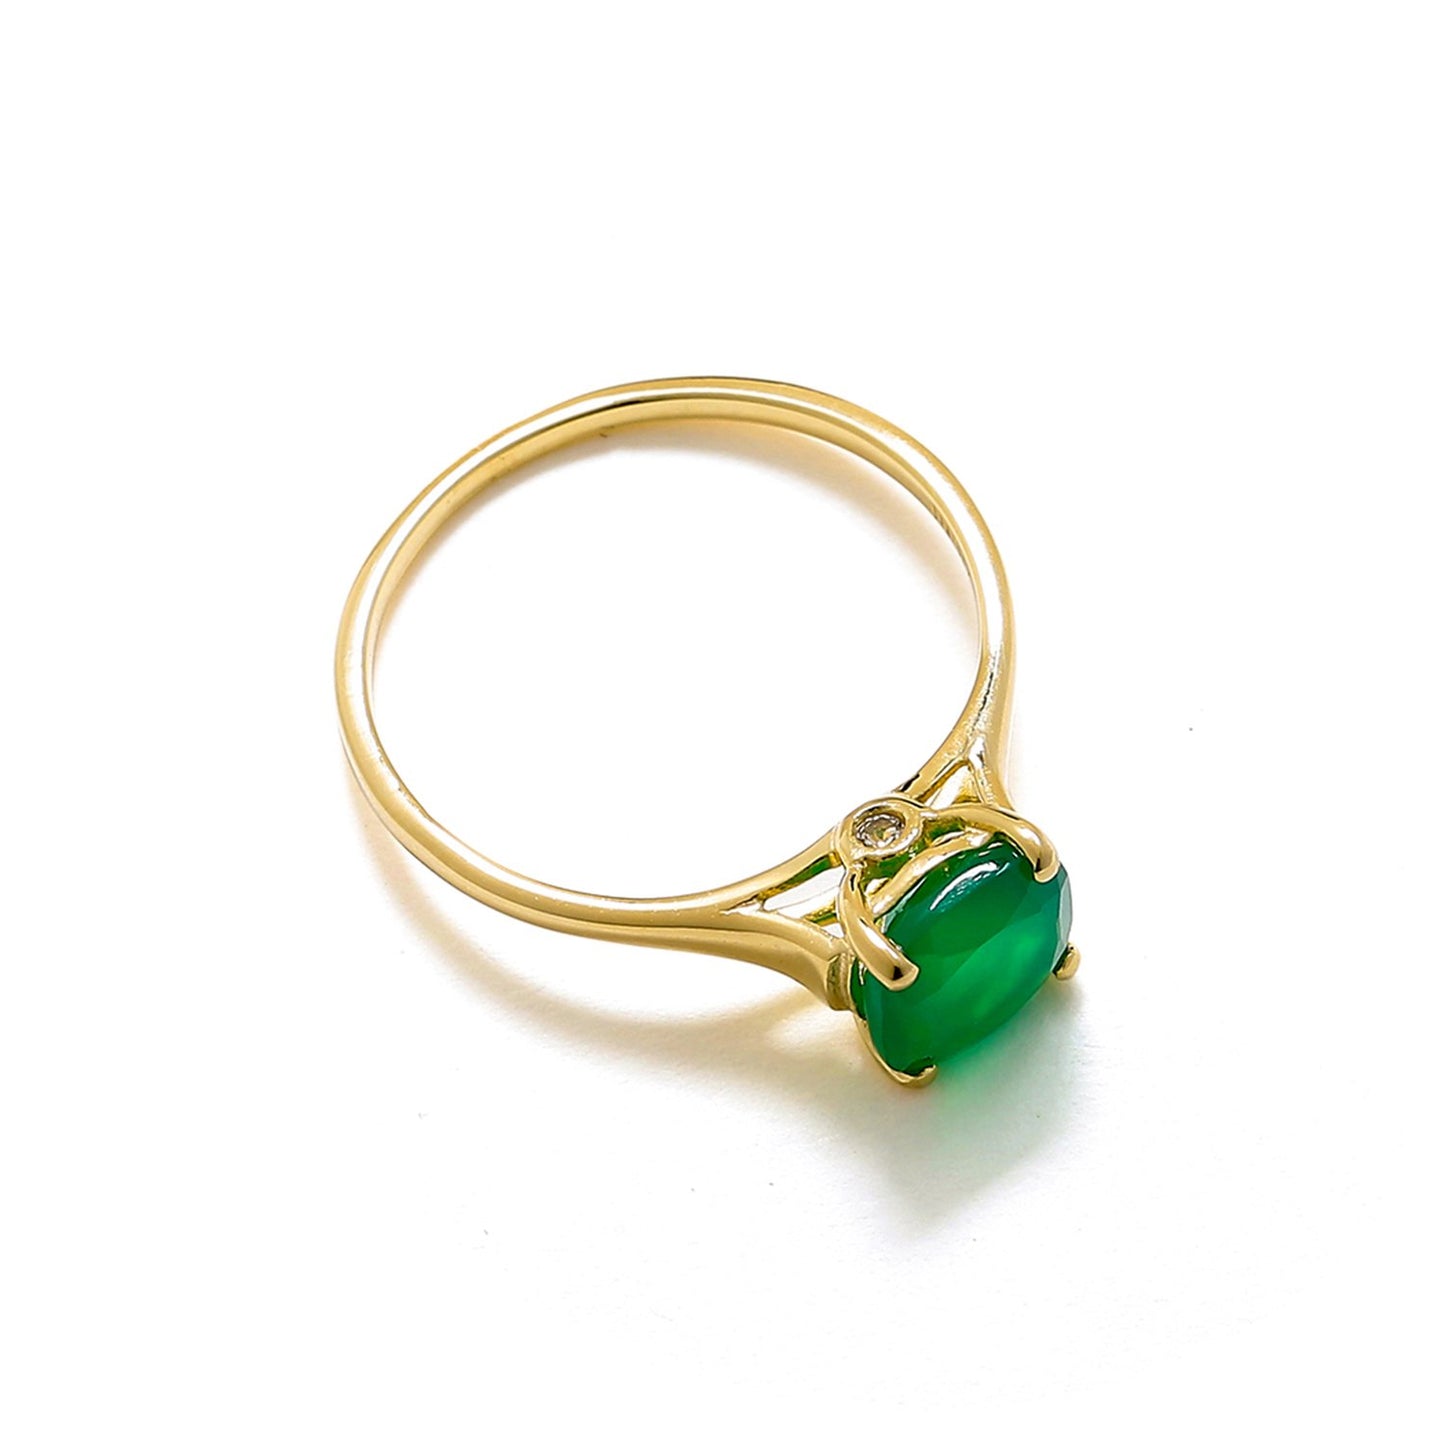 Tiramisu 1.30 Ct Green Onyx Solid 10k Yellow Gold Ring Jewelry